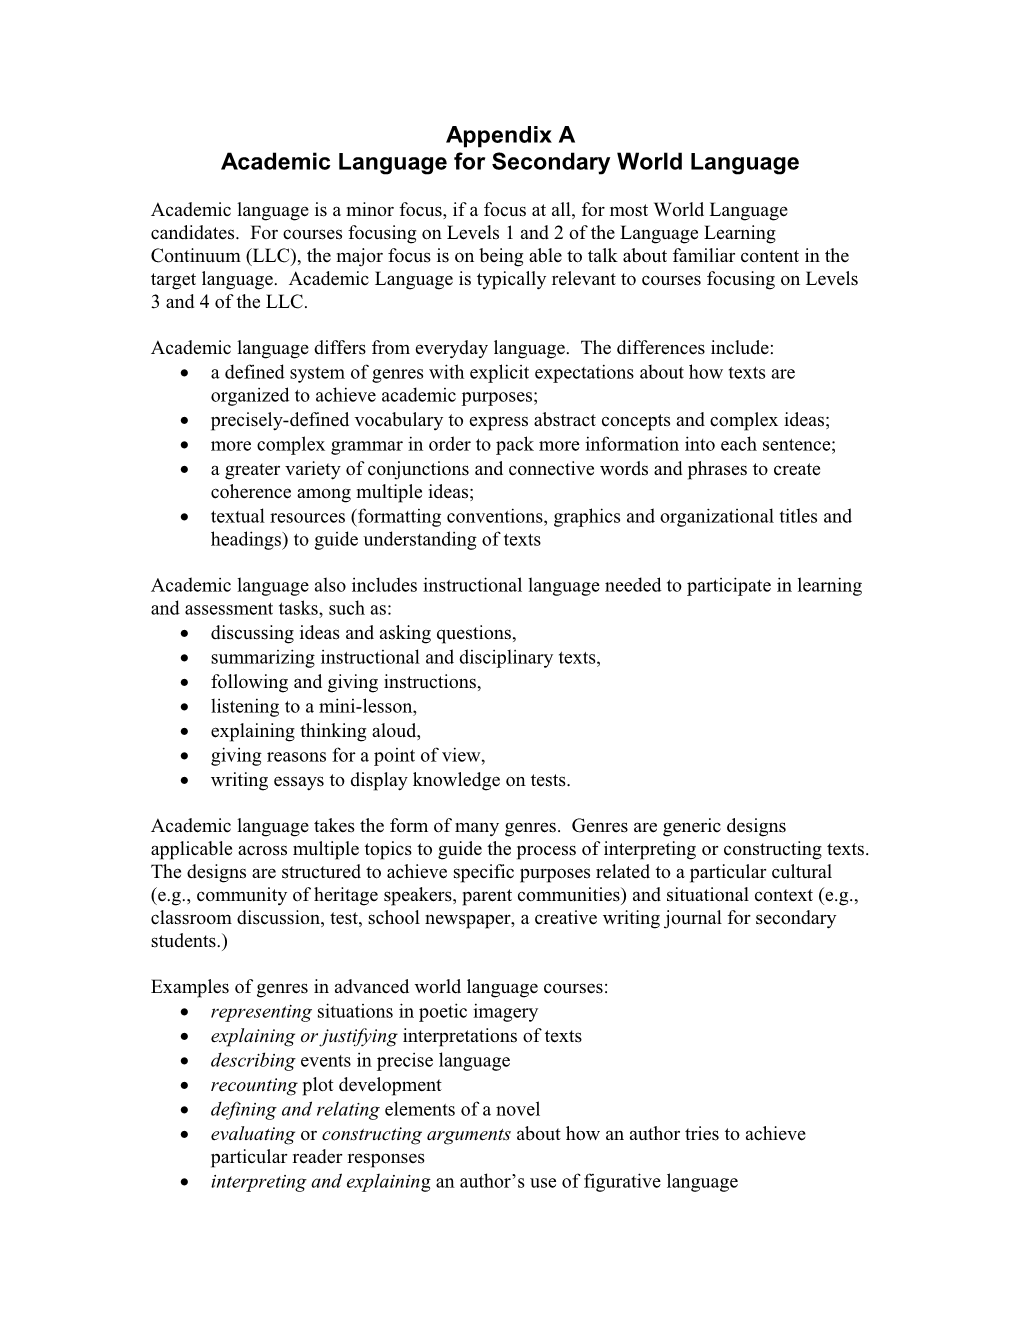 Academic Language for Secondary World Language